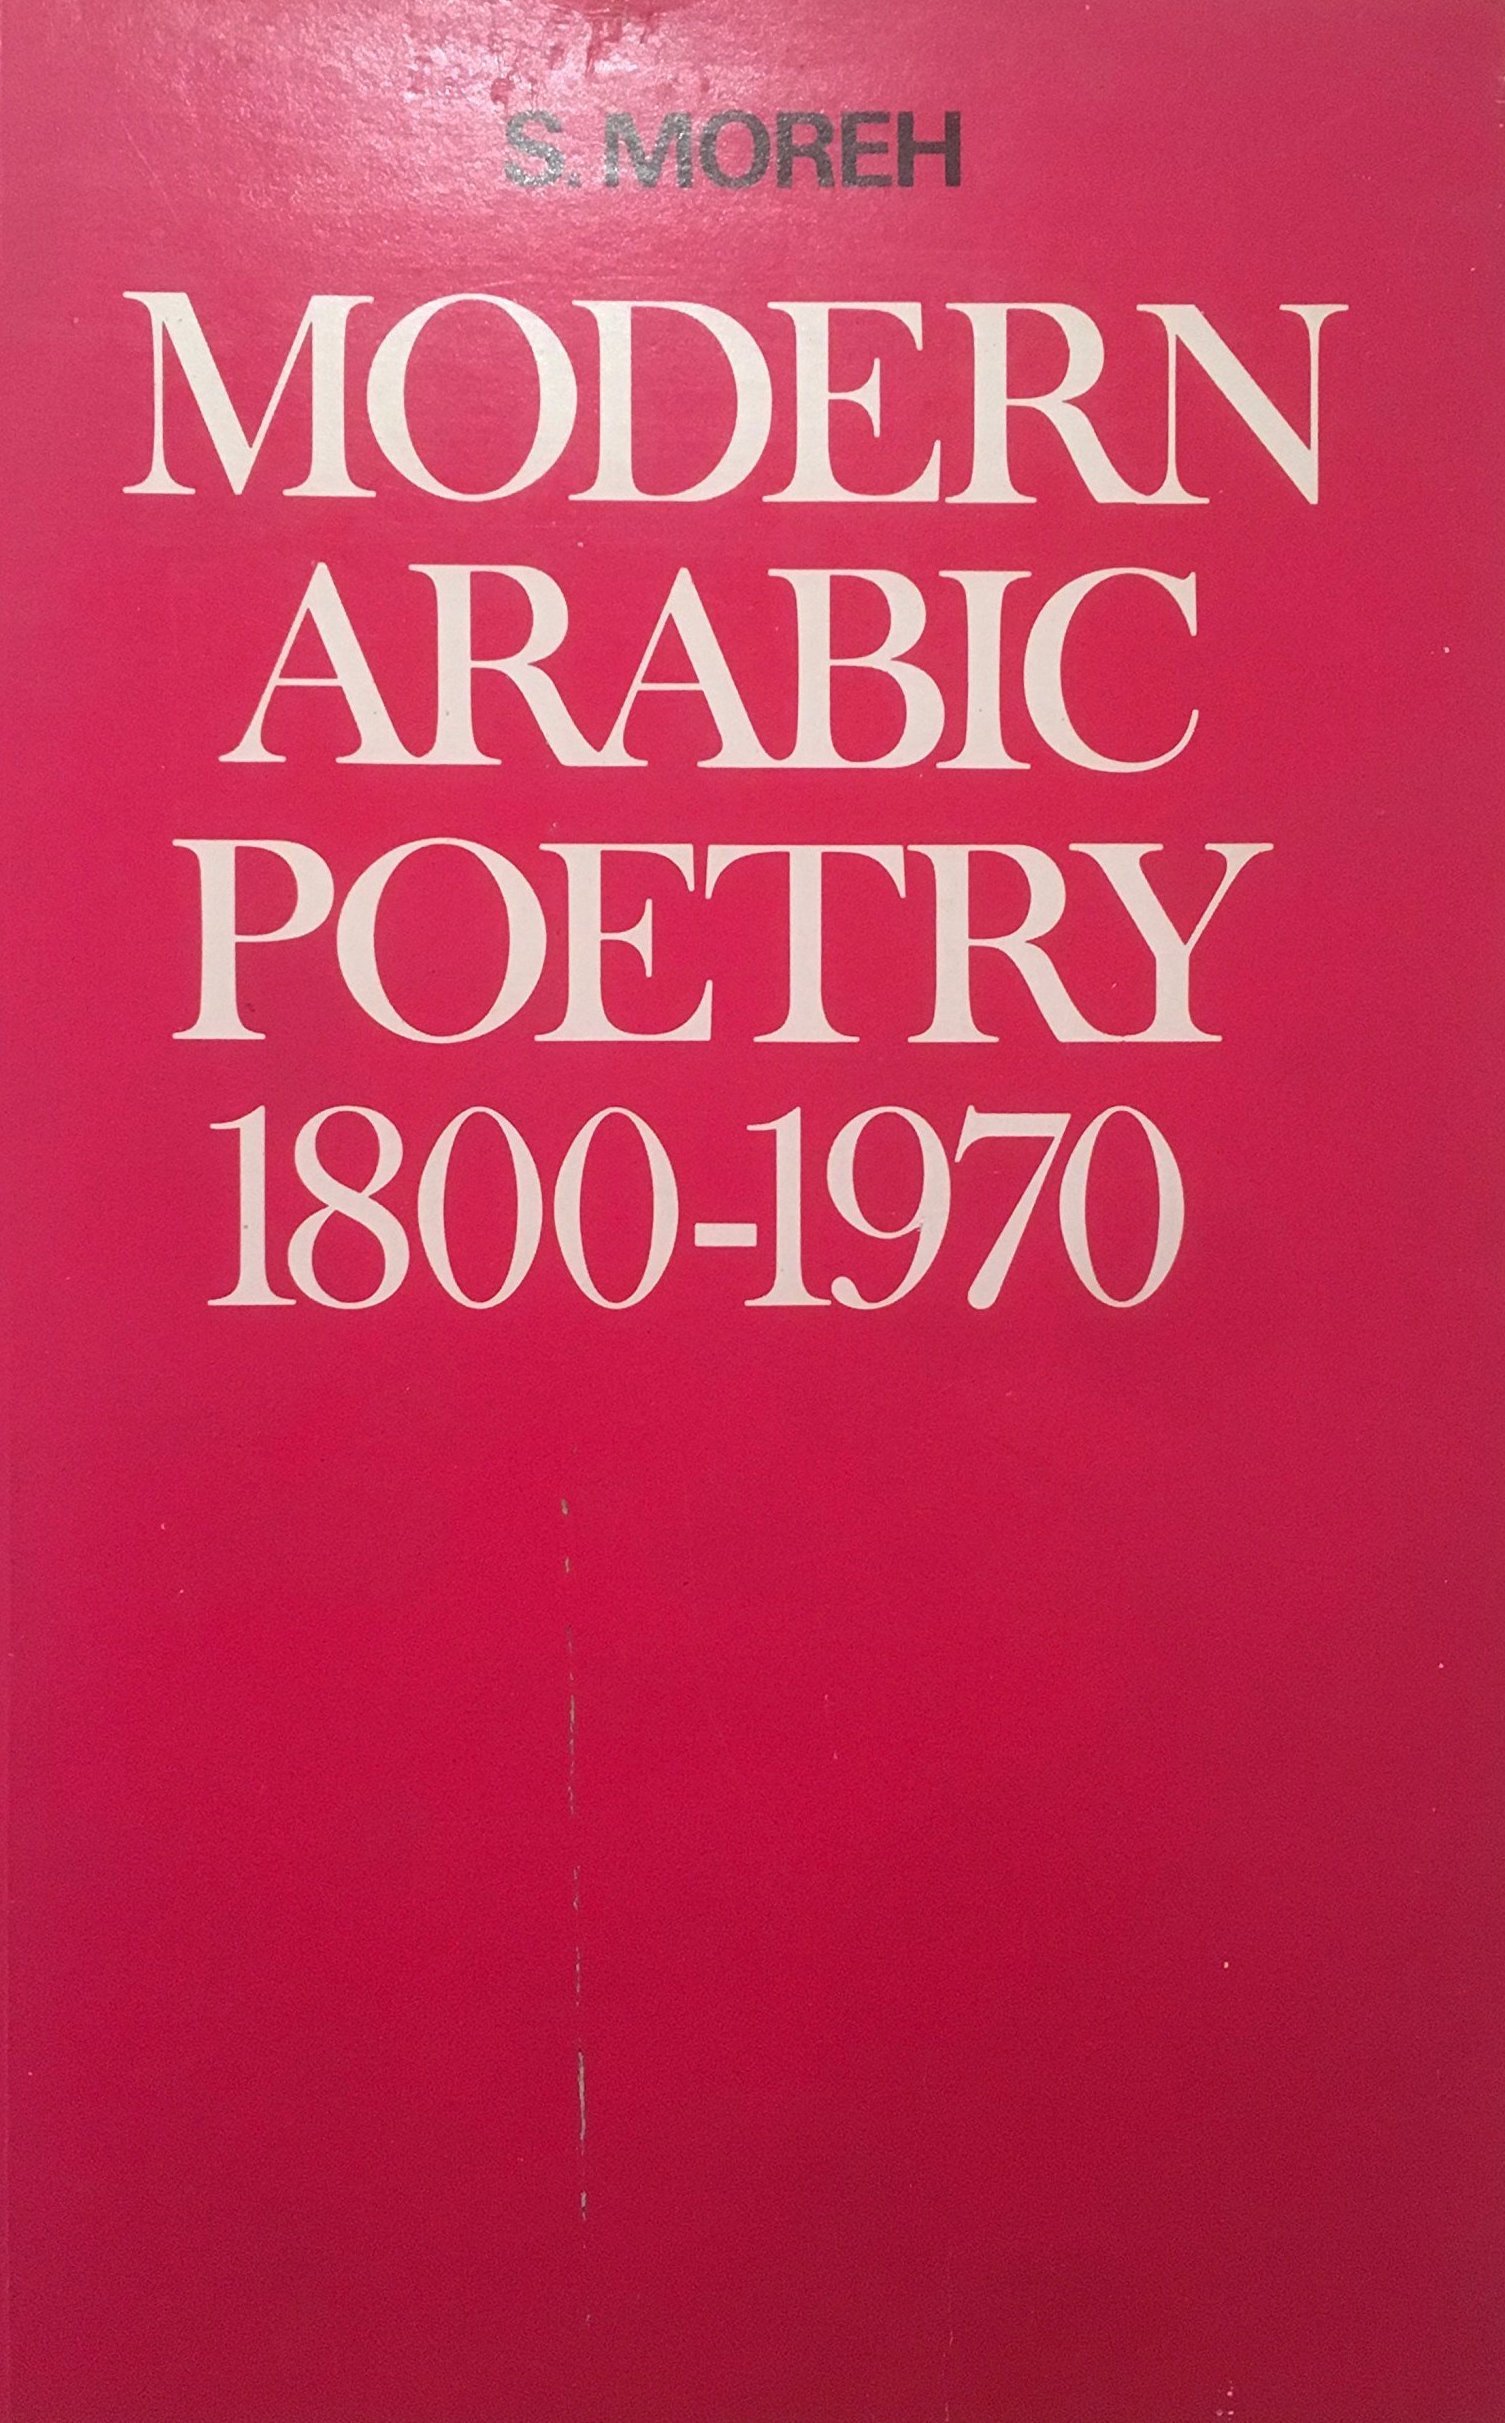 Shmuel Moreh, Modern Arabic Poetry (1800-1970), Leiden E.J. Brill, 1970